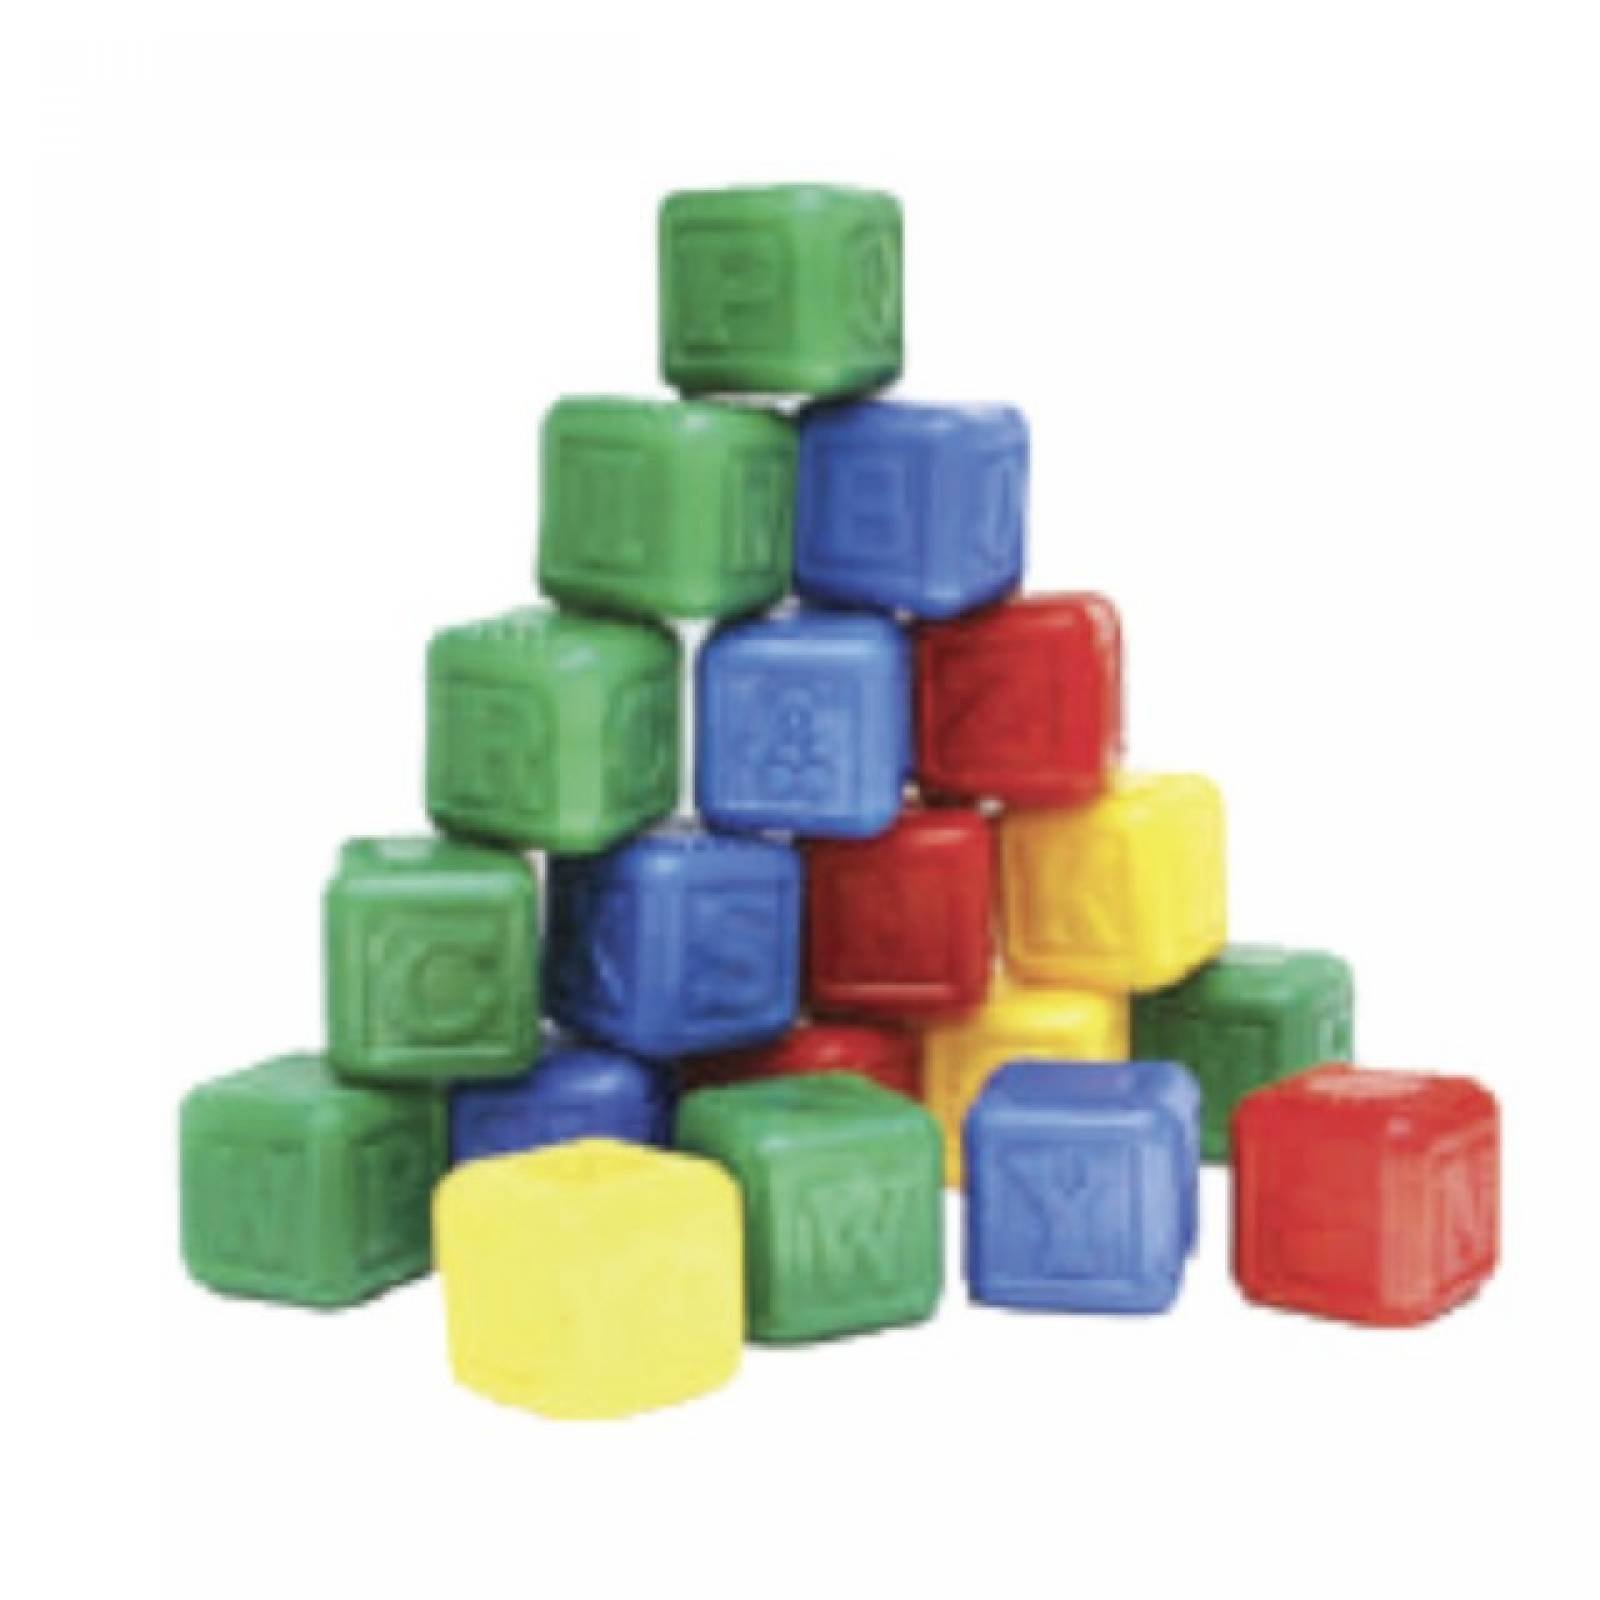 Cubos con letras juguete didÃ¡citco de la linea ConstrucciÃ³n